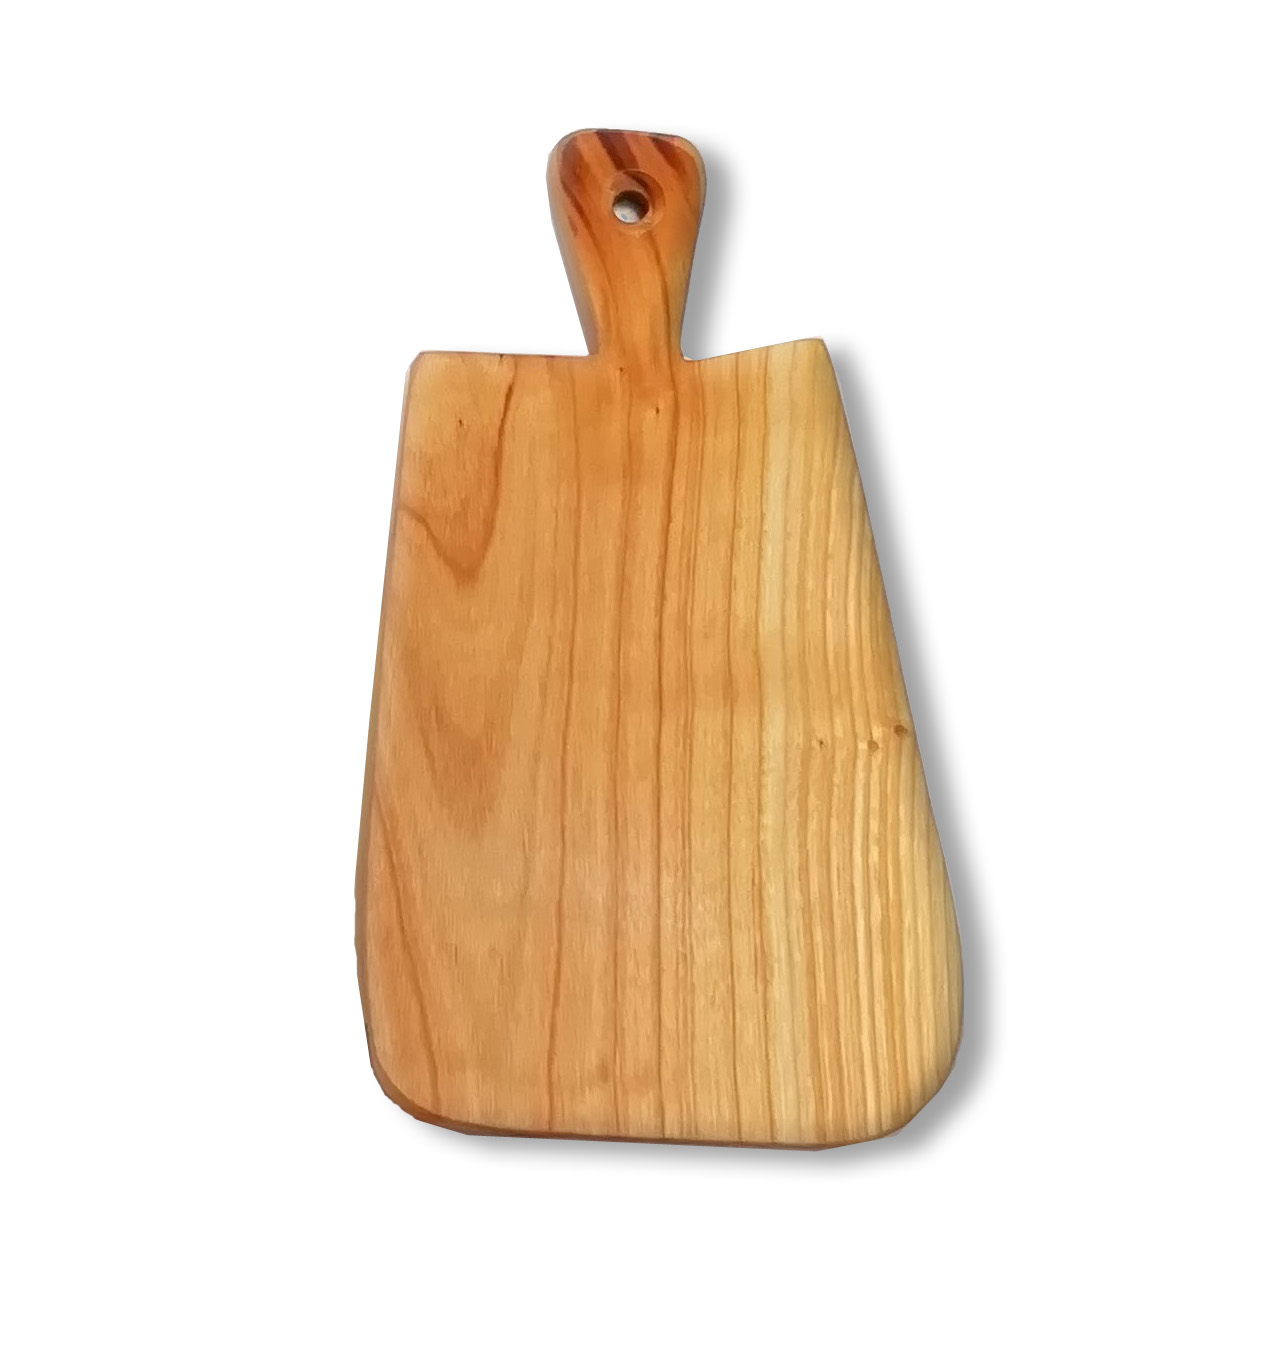 tagliere piccolo in legno di olmo o ciliegio - 22 cm